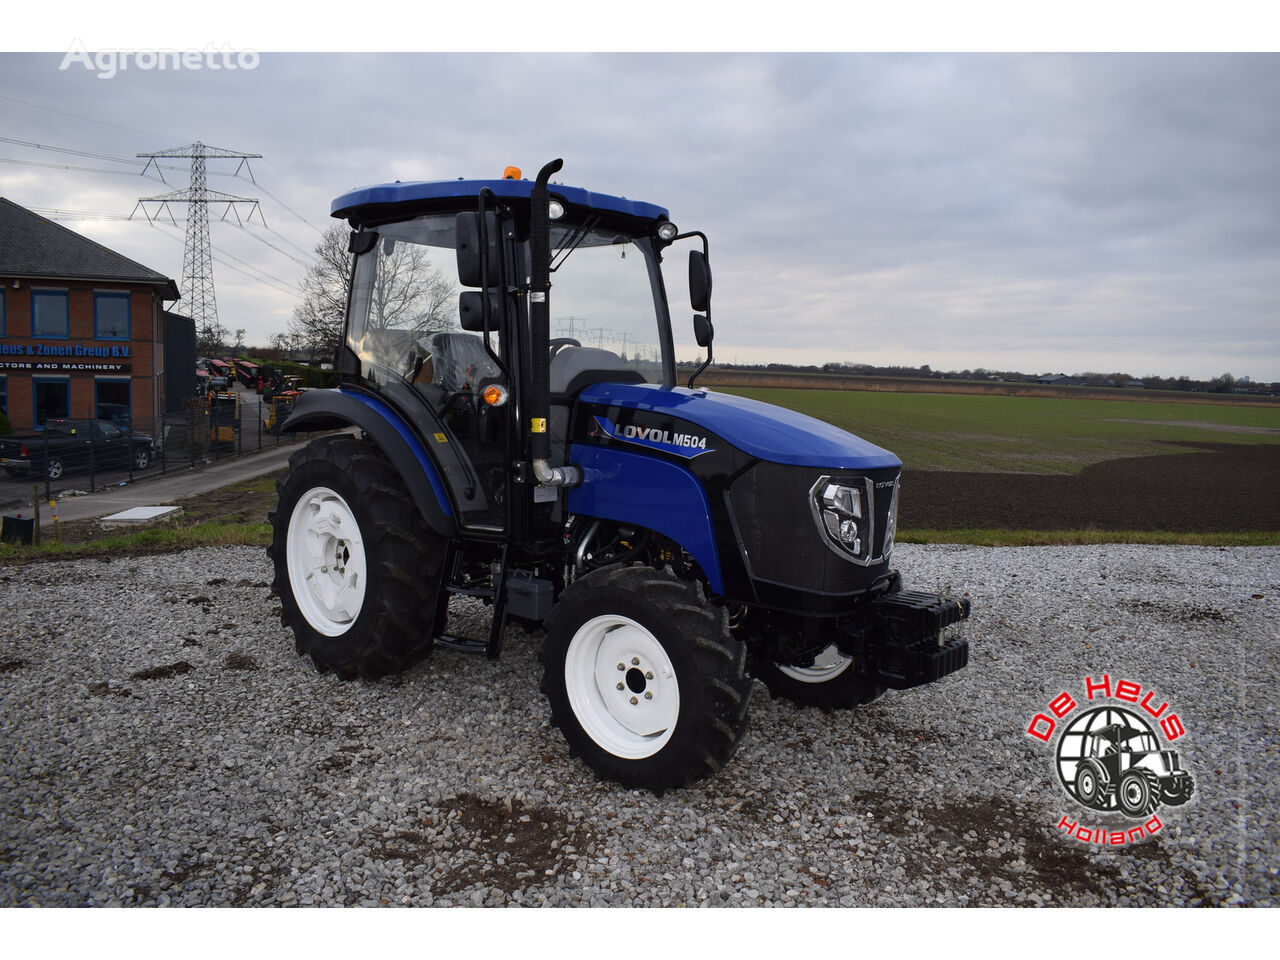 Lovol M504 tractor de ruedas nuevo